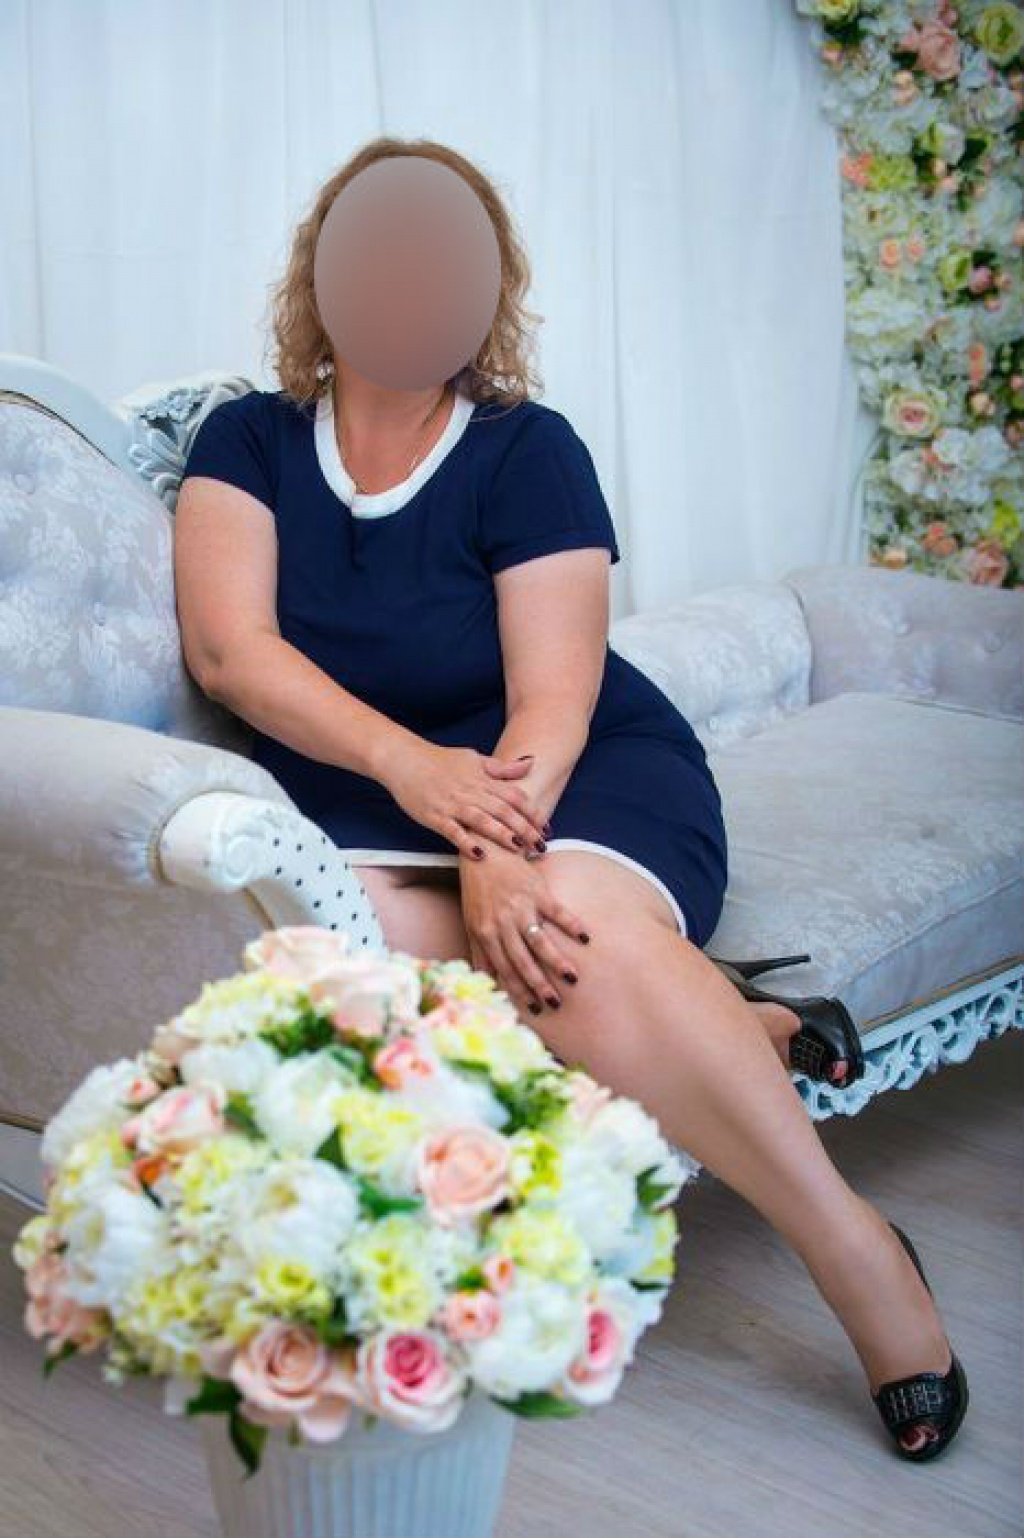 Юля Ветка сакуры: проститутки индивидуалки в Челябинске